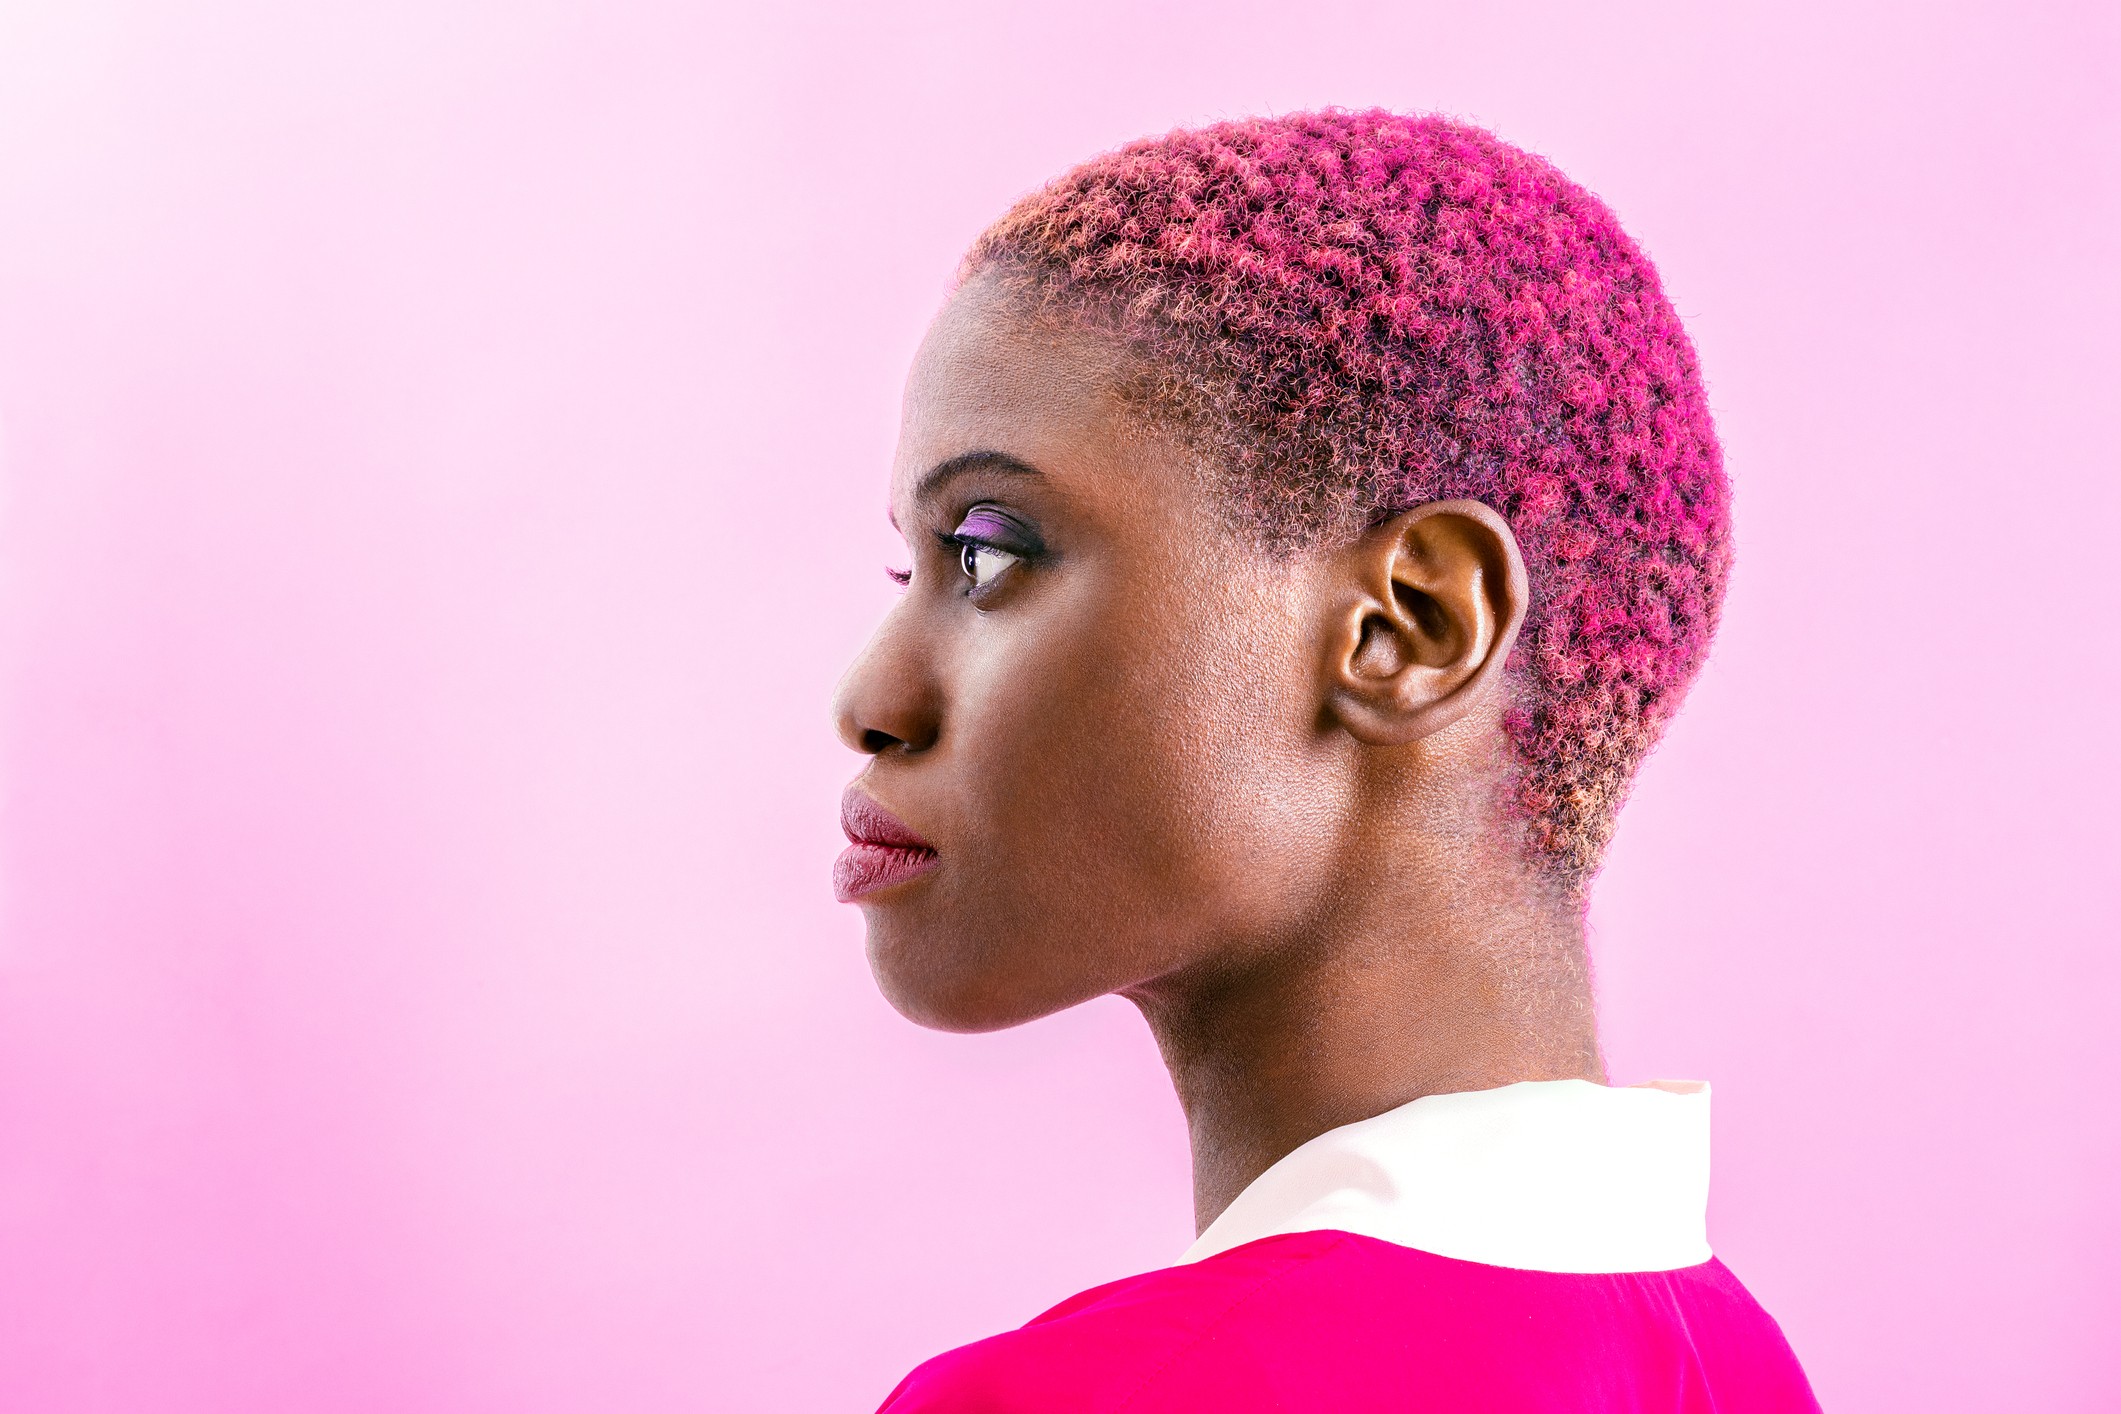 Cores fantasia para o cabelo mostram personalidade e ousadia para se diferenciar (Foto: Getty Images)